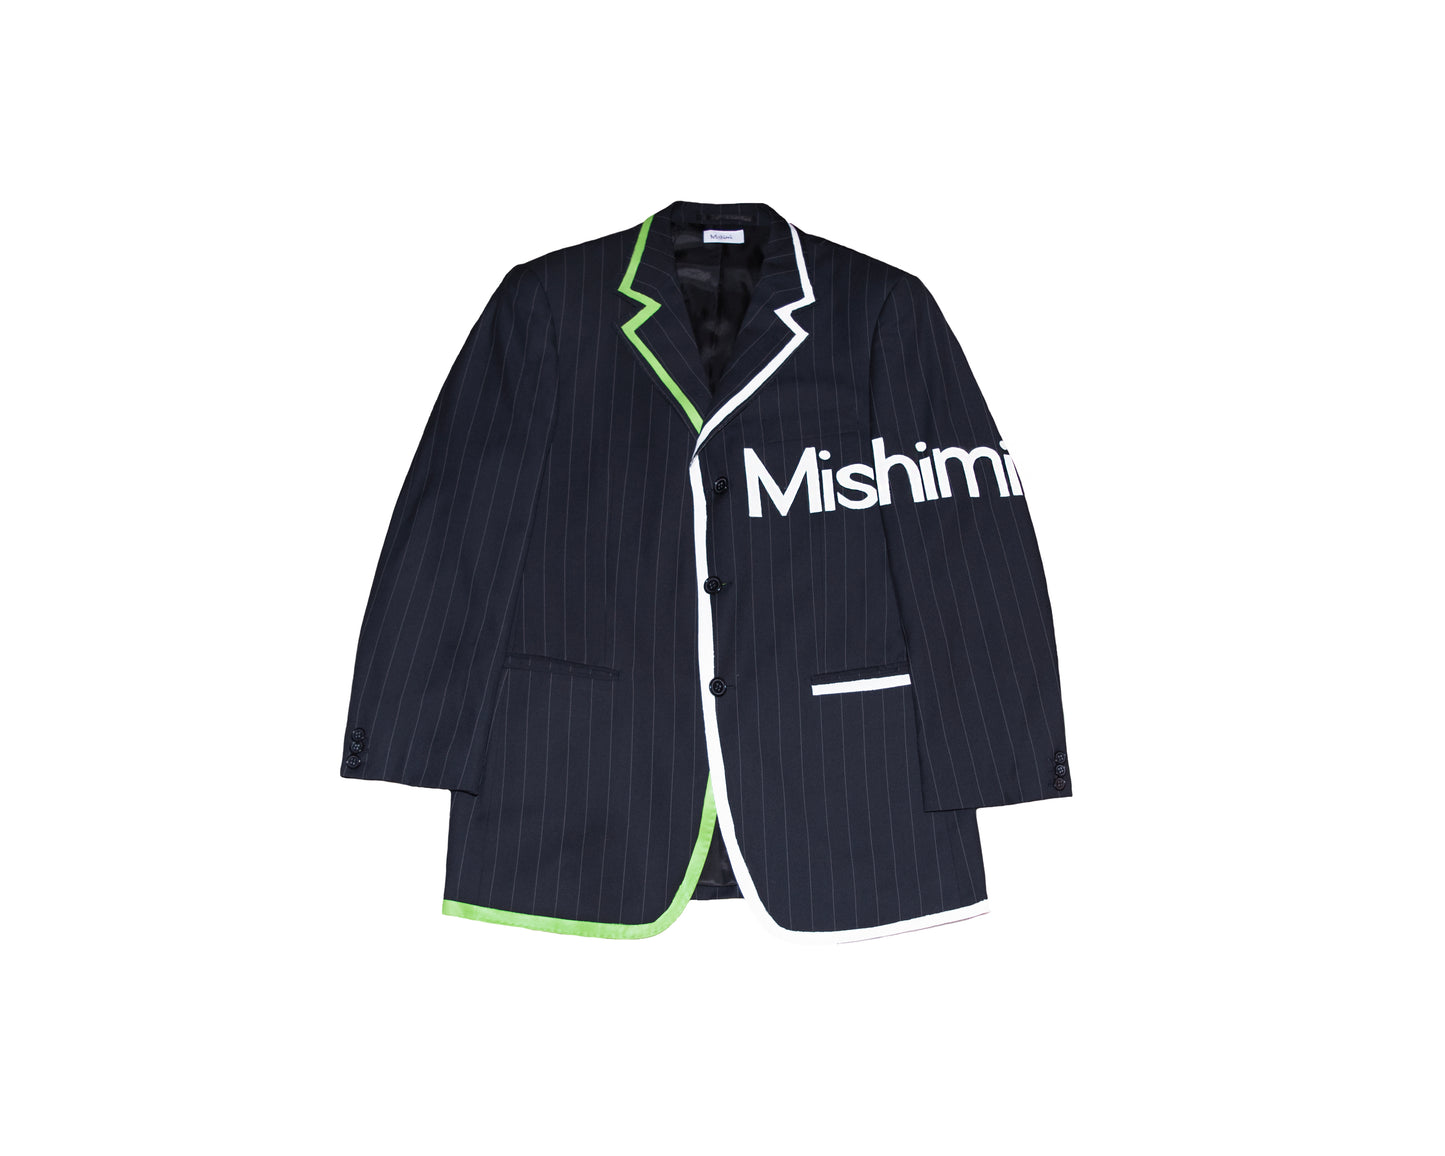 Mishimi Logo Suit